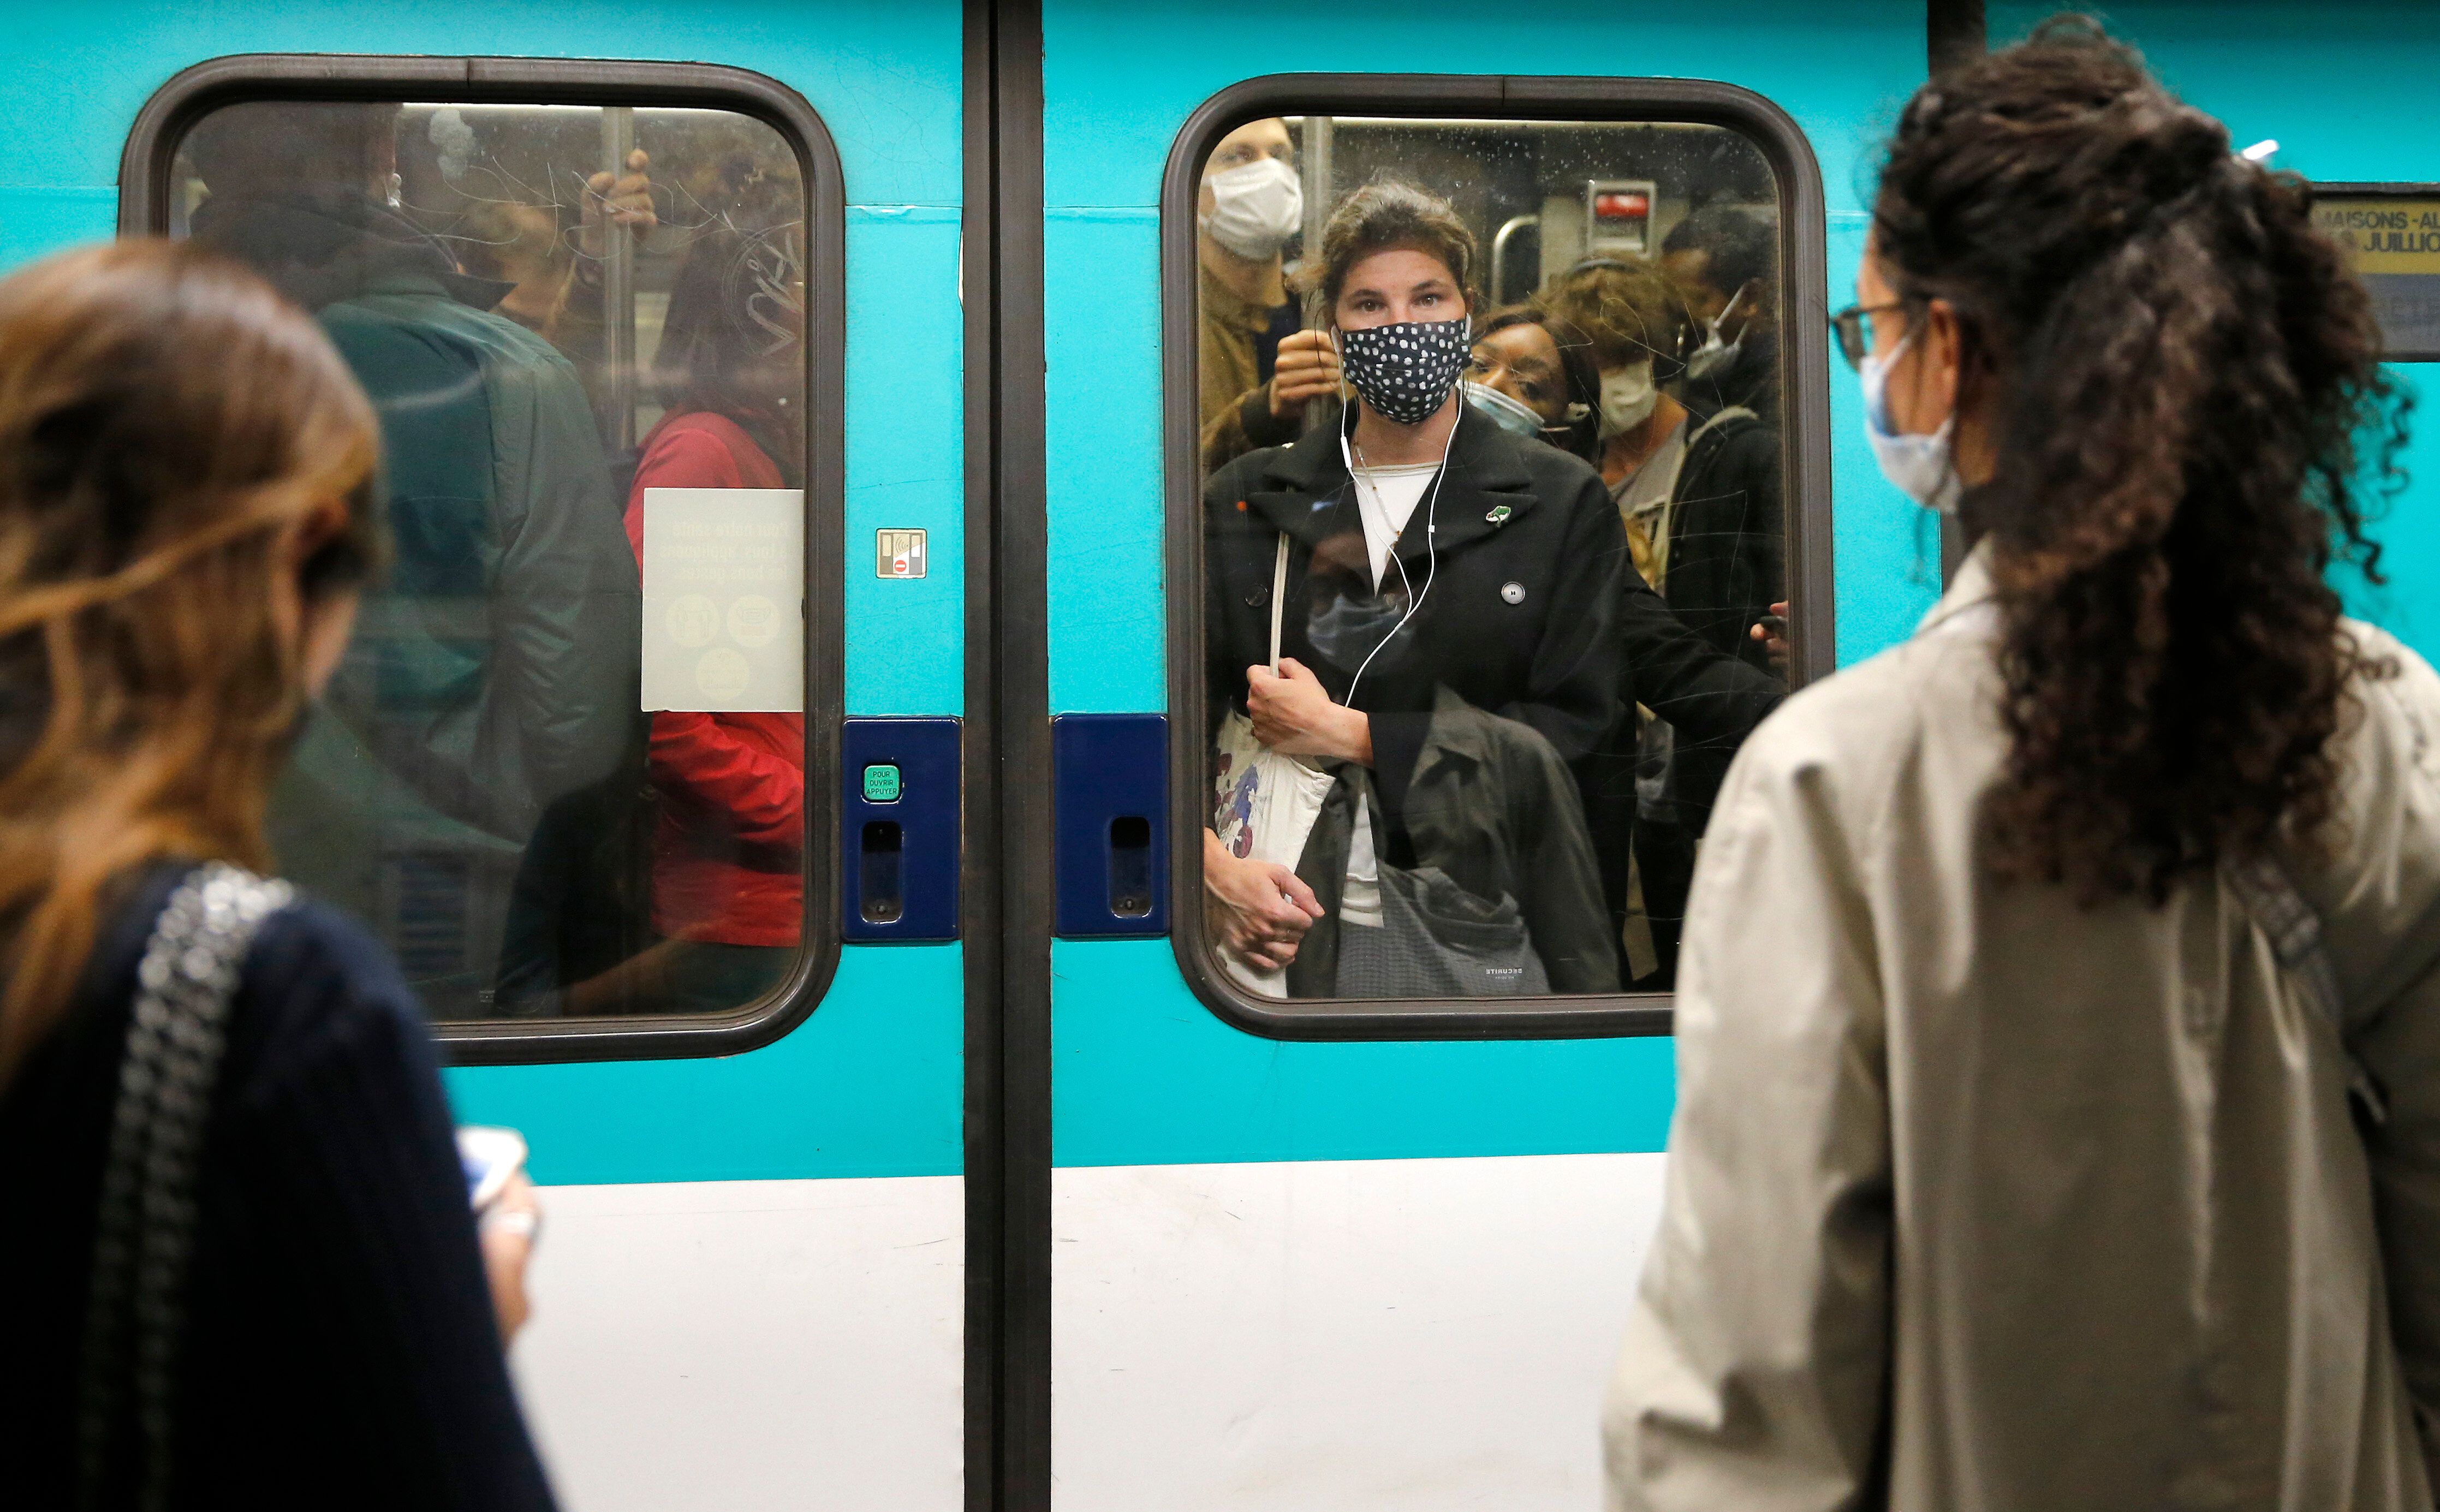 DEs passagers du métro parisien le 7 octobre 2020 (Photo by Chesnot/Getty